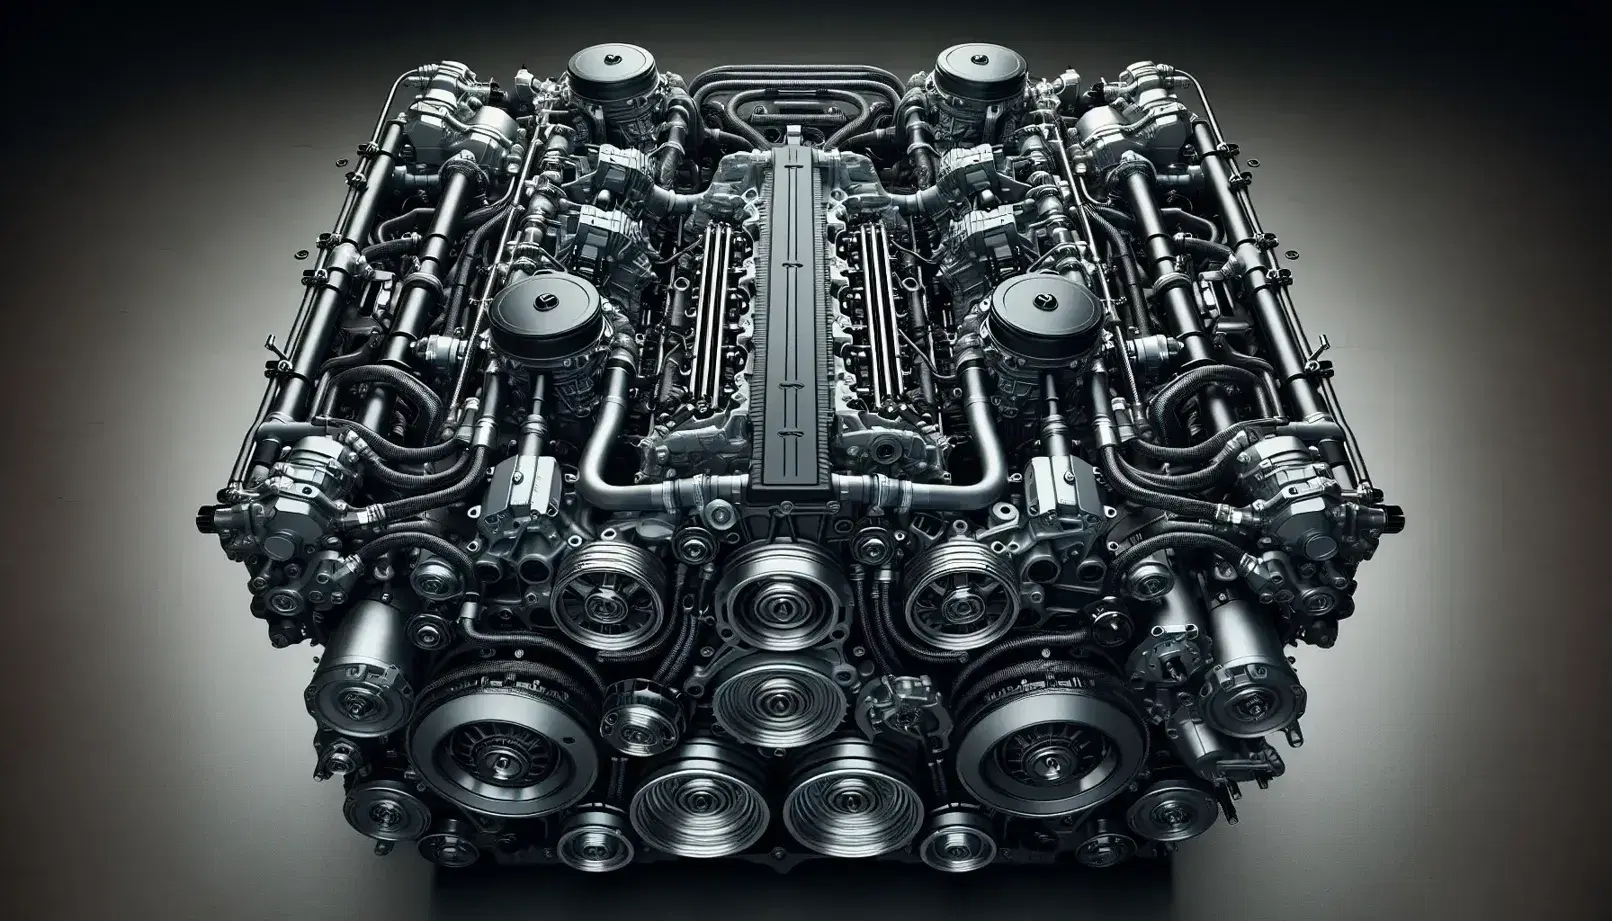 Sección transversal de motor de combustión interna de coche mostrando pistones, bloques de cilindros, tuberías metálicas, cubierta de válvulas y componentes auxiliares.